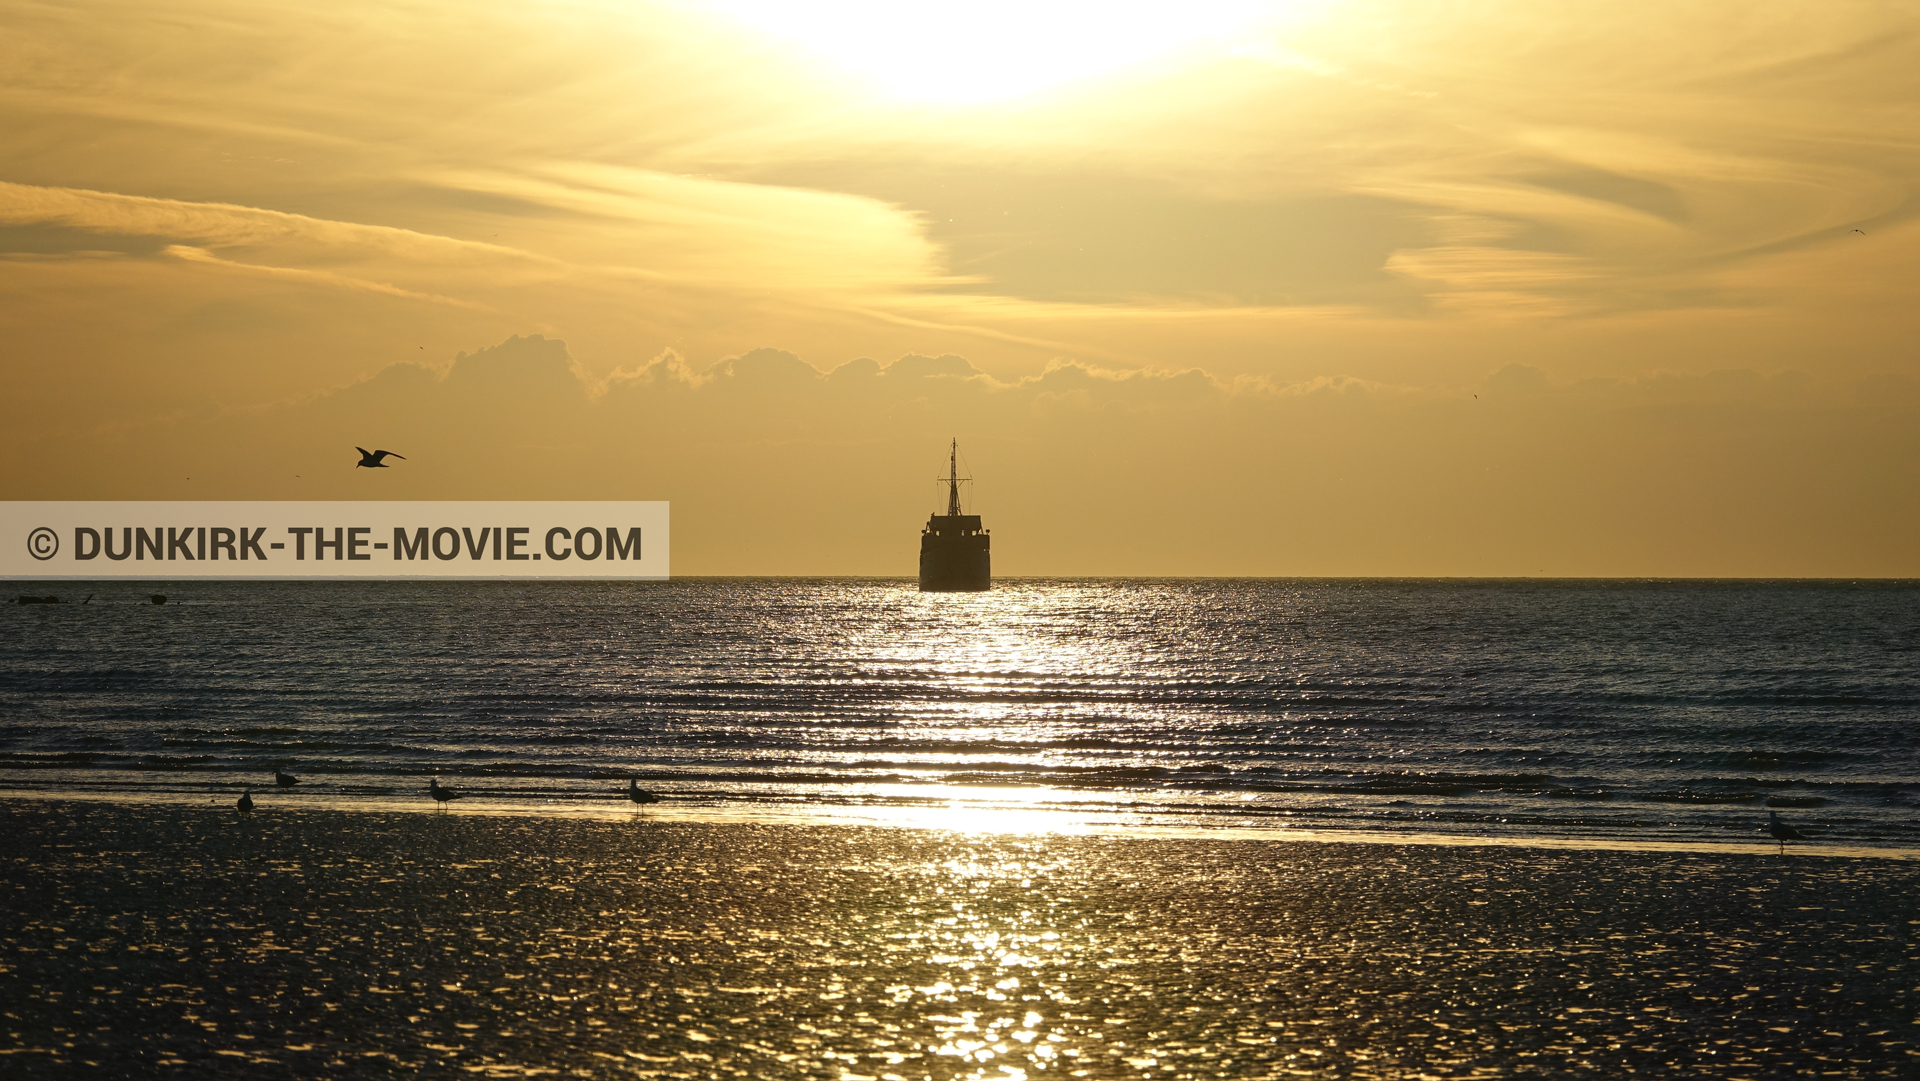 Fotos con playa, mares calma, cielo anaranjado, barco,  durante el rodaje de la película Dunkerque de Nolan